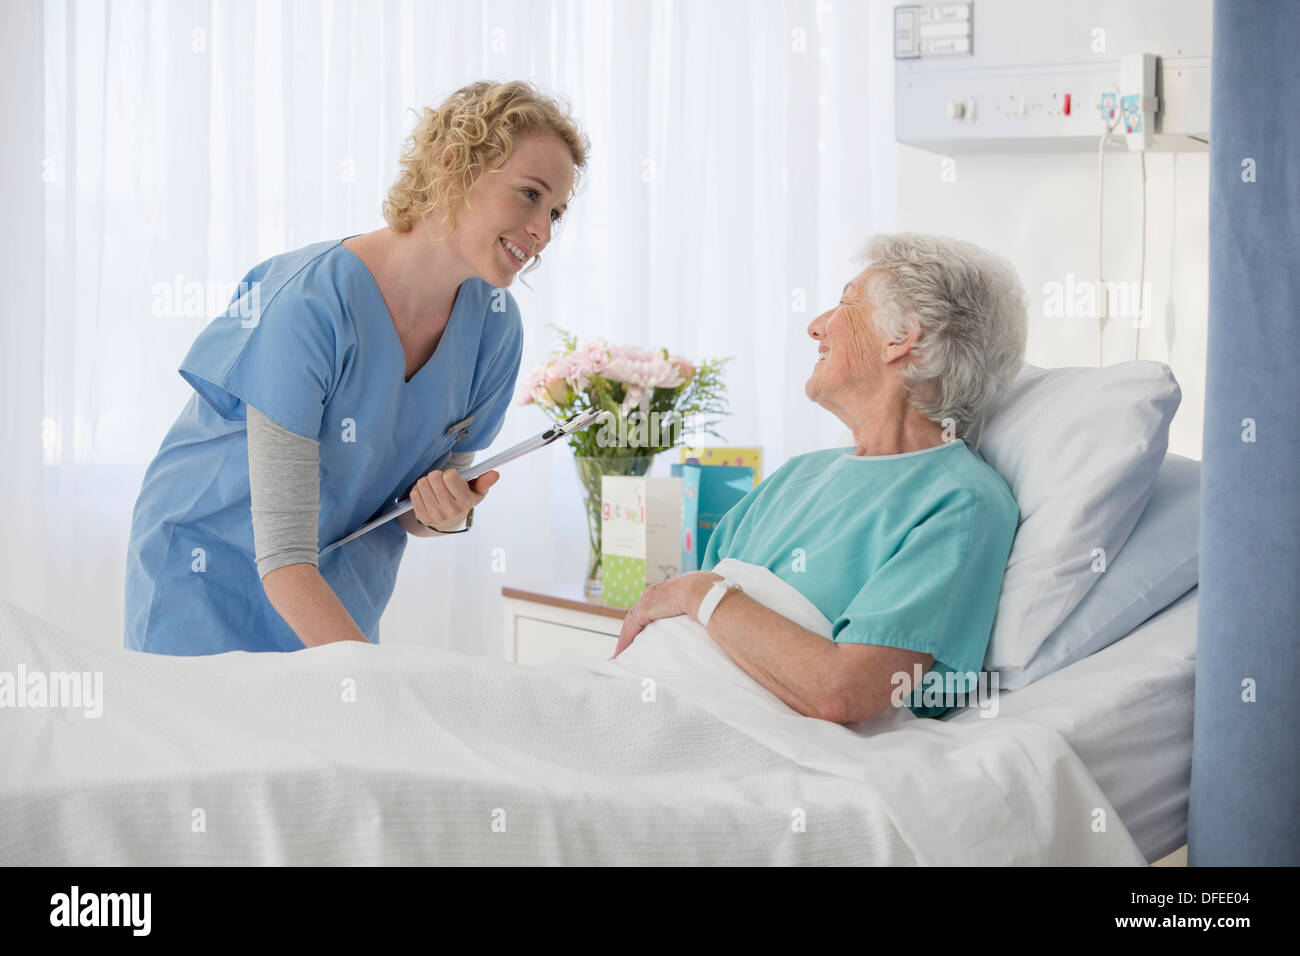 Infirmière et vieillissement patient talking in hospital room Banque D'Images